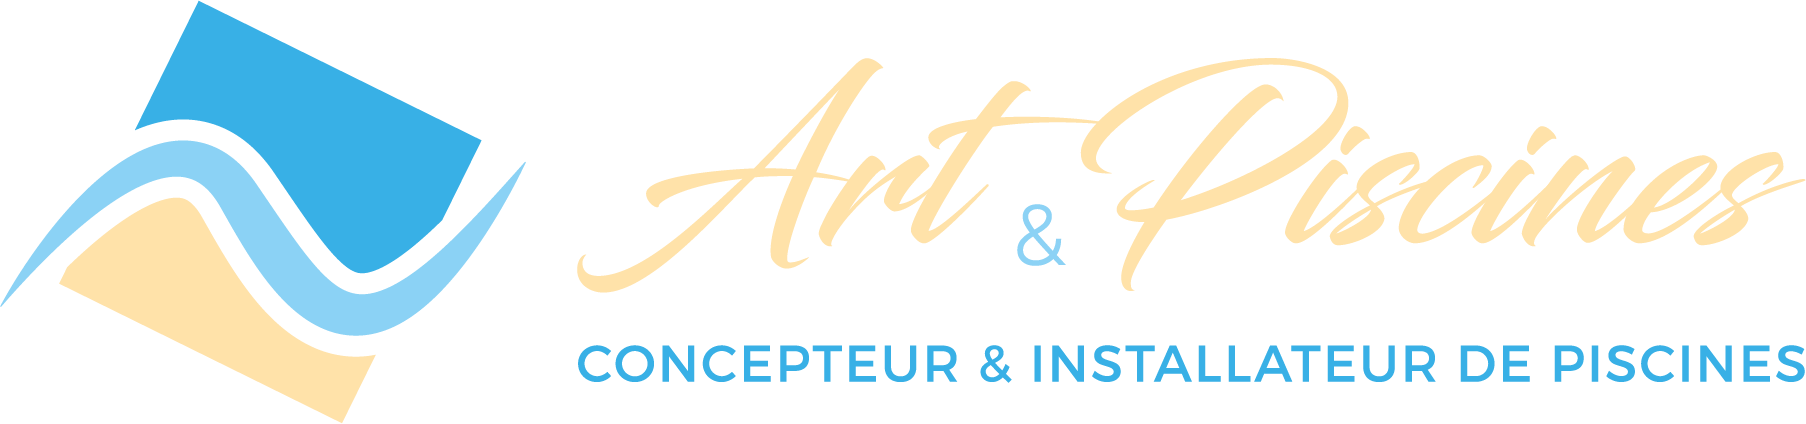 Art et piscines - Logo couleurs